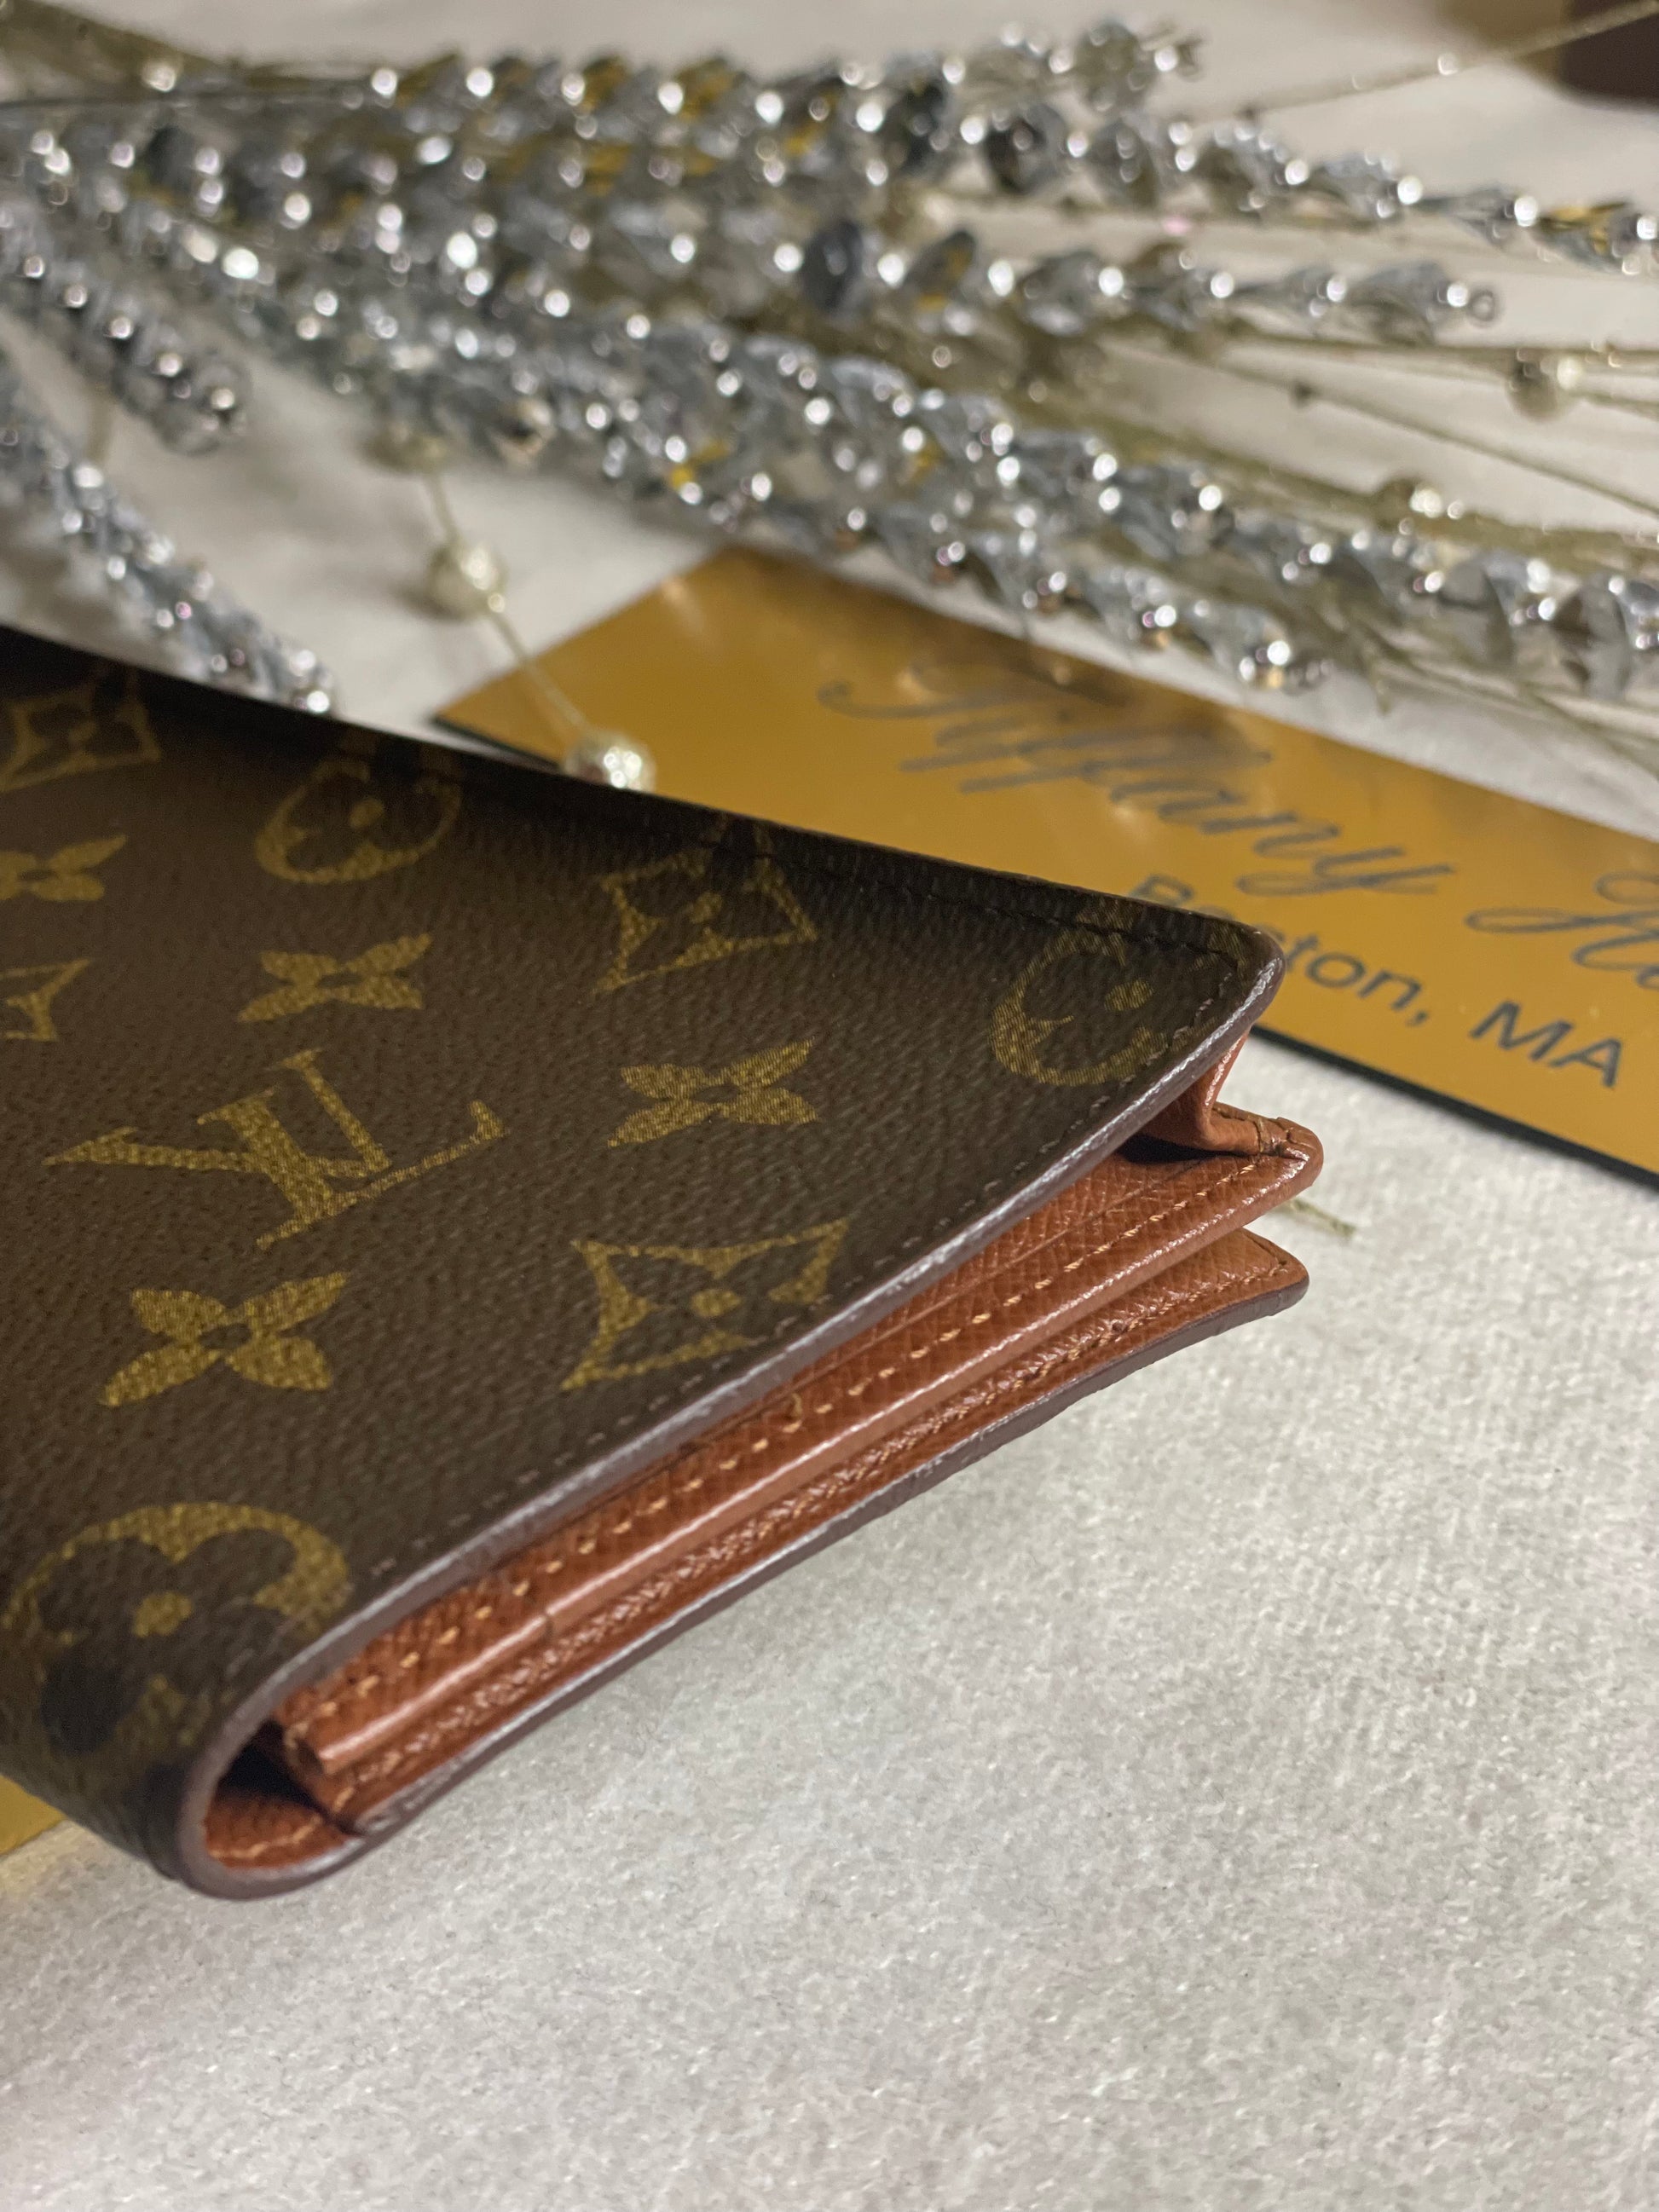 Louis Vuitton, Bags, Authentic Louis Vuitton Bi Fold Check Book Wallet